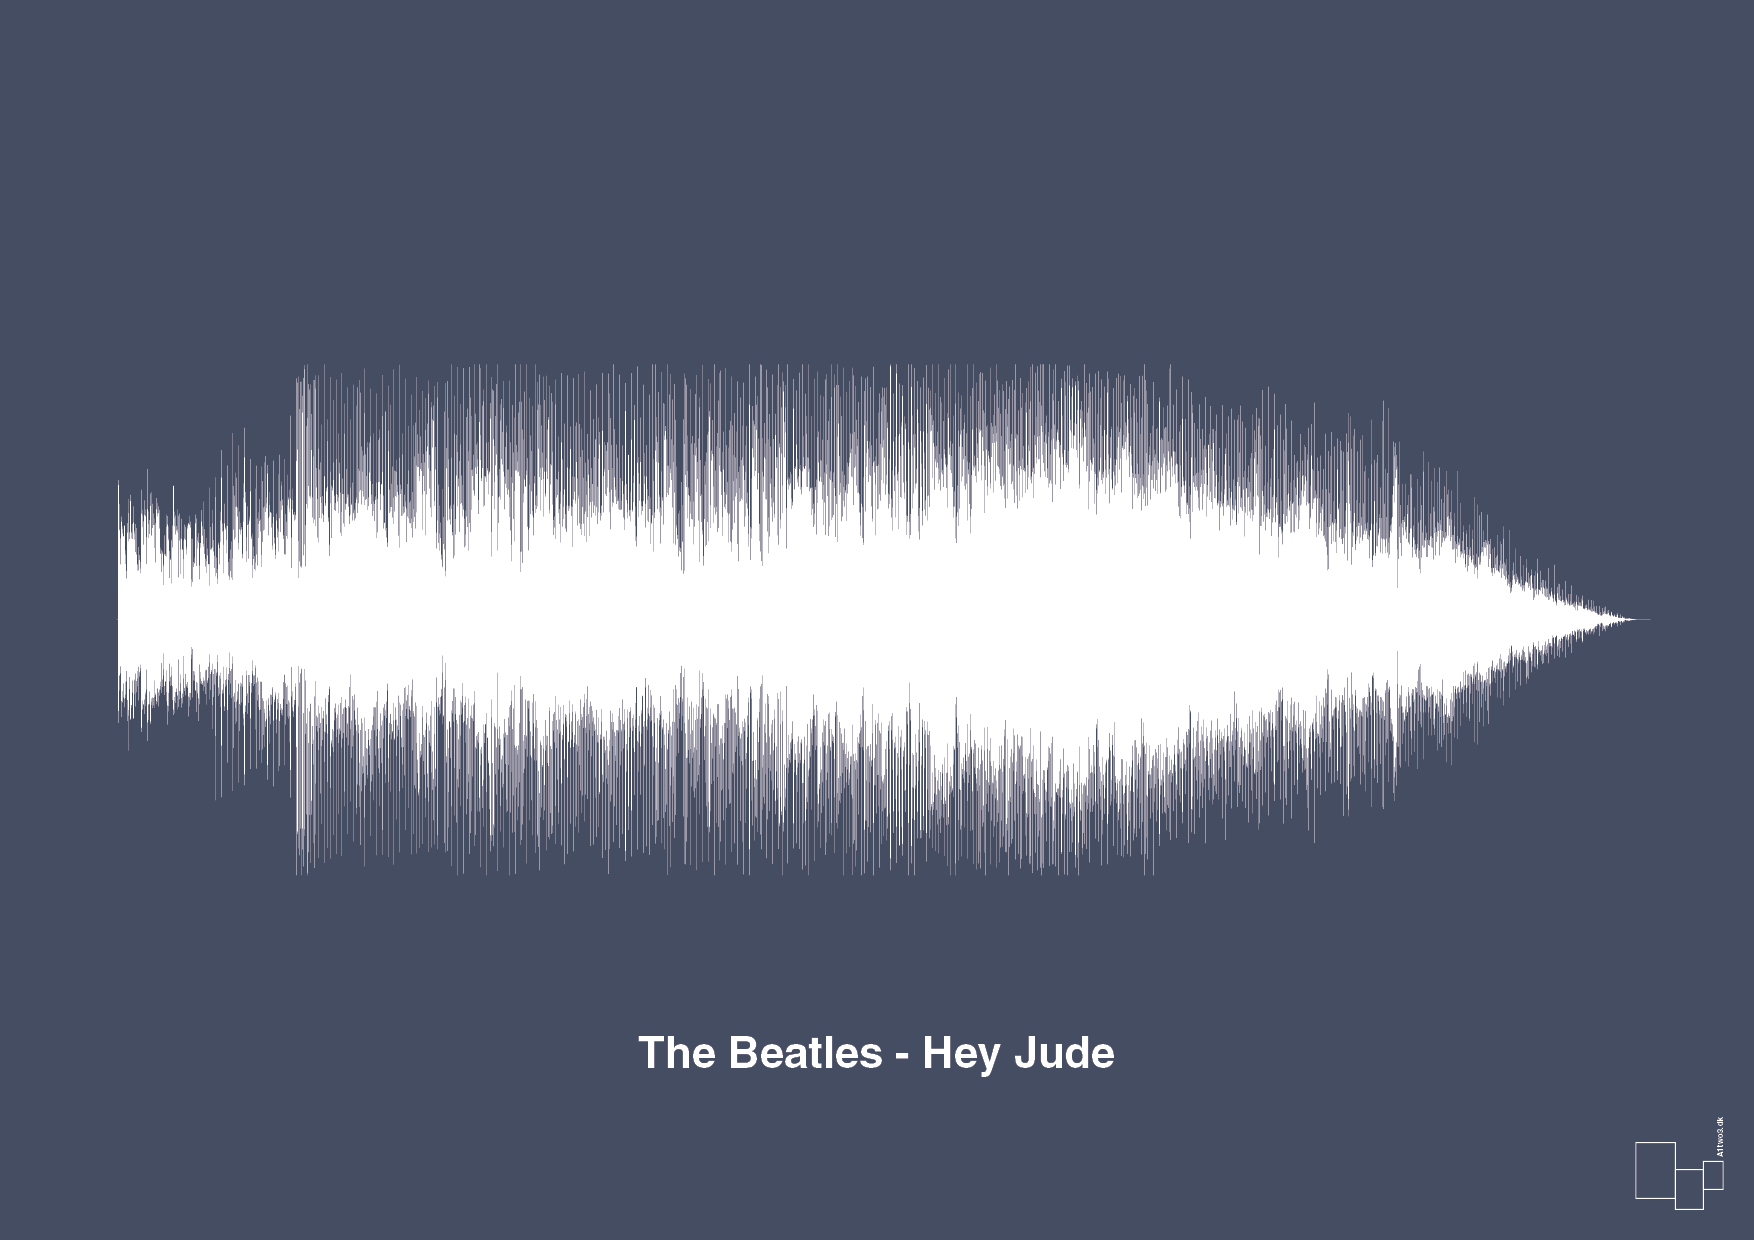 the beatles - hey jude - Plakat med Musik i Petrol